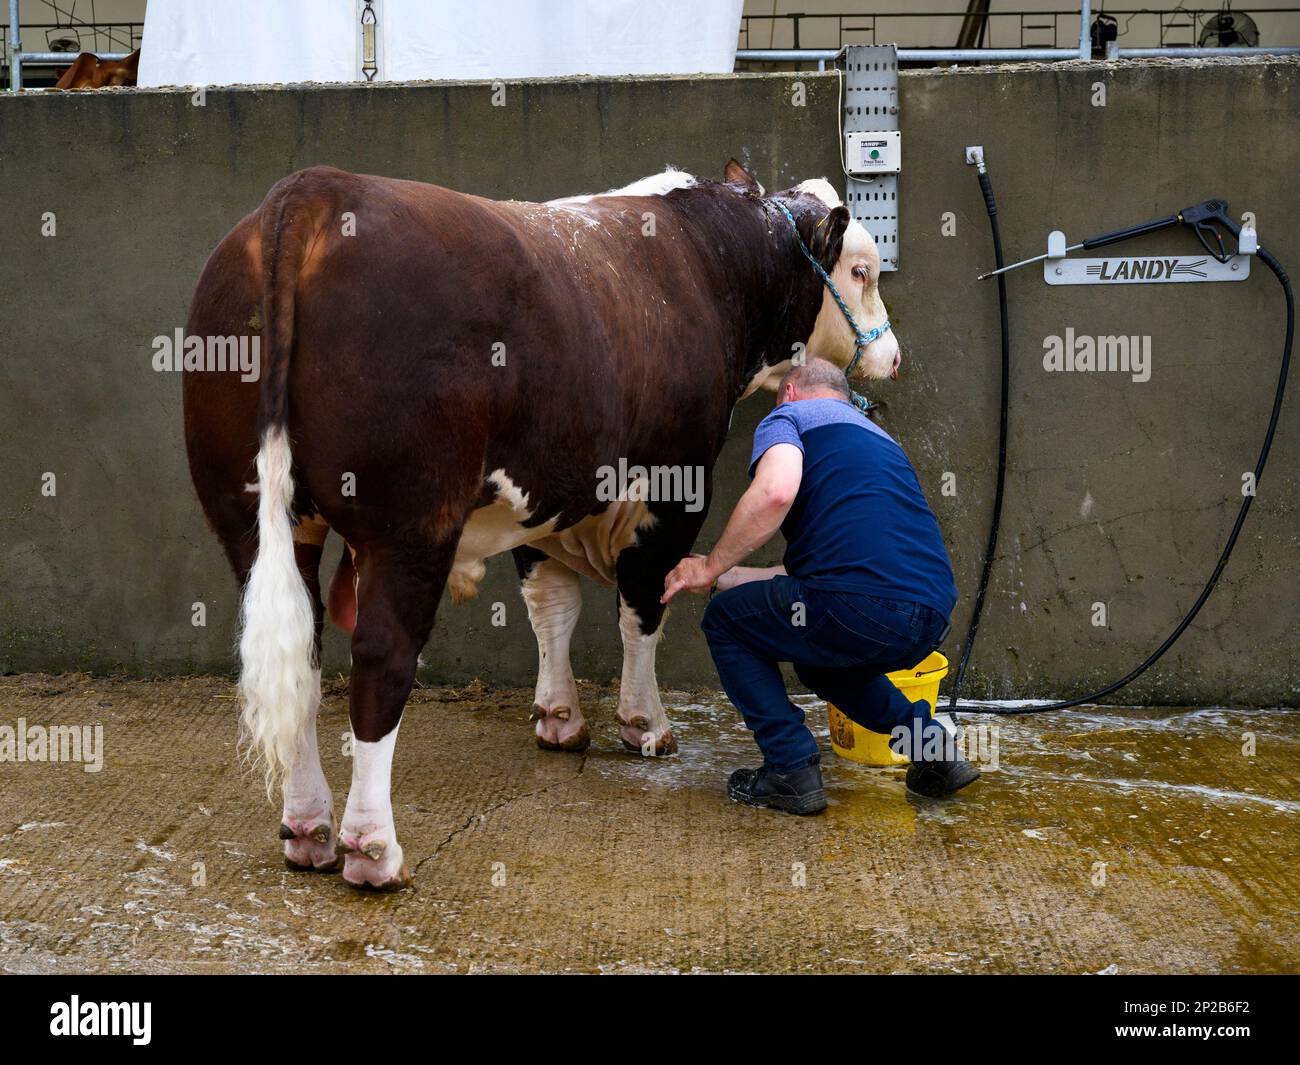 Homme fermier lavant le taureau blanc rouge Hereford debout dans le lavage de bétail, se préparer à l'animal (eau savonneuse) - Great Yorkshire Show, Harrogate, Angleterre Royaume-Uni. Banque D'Images